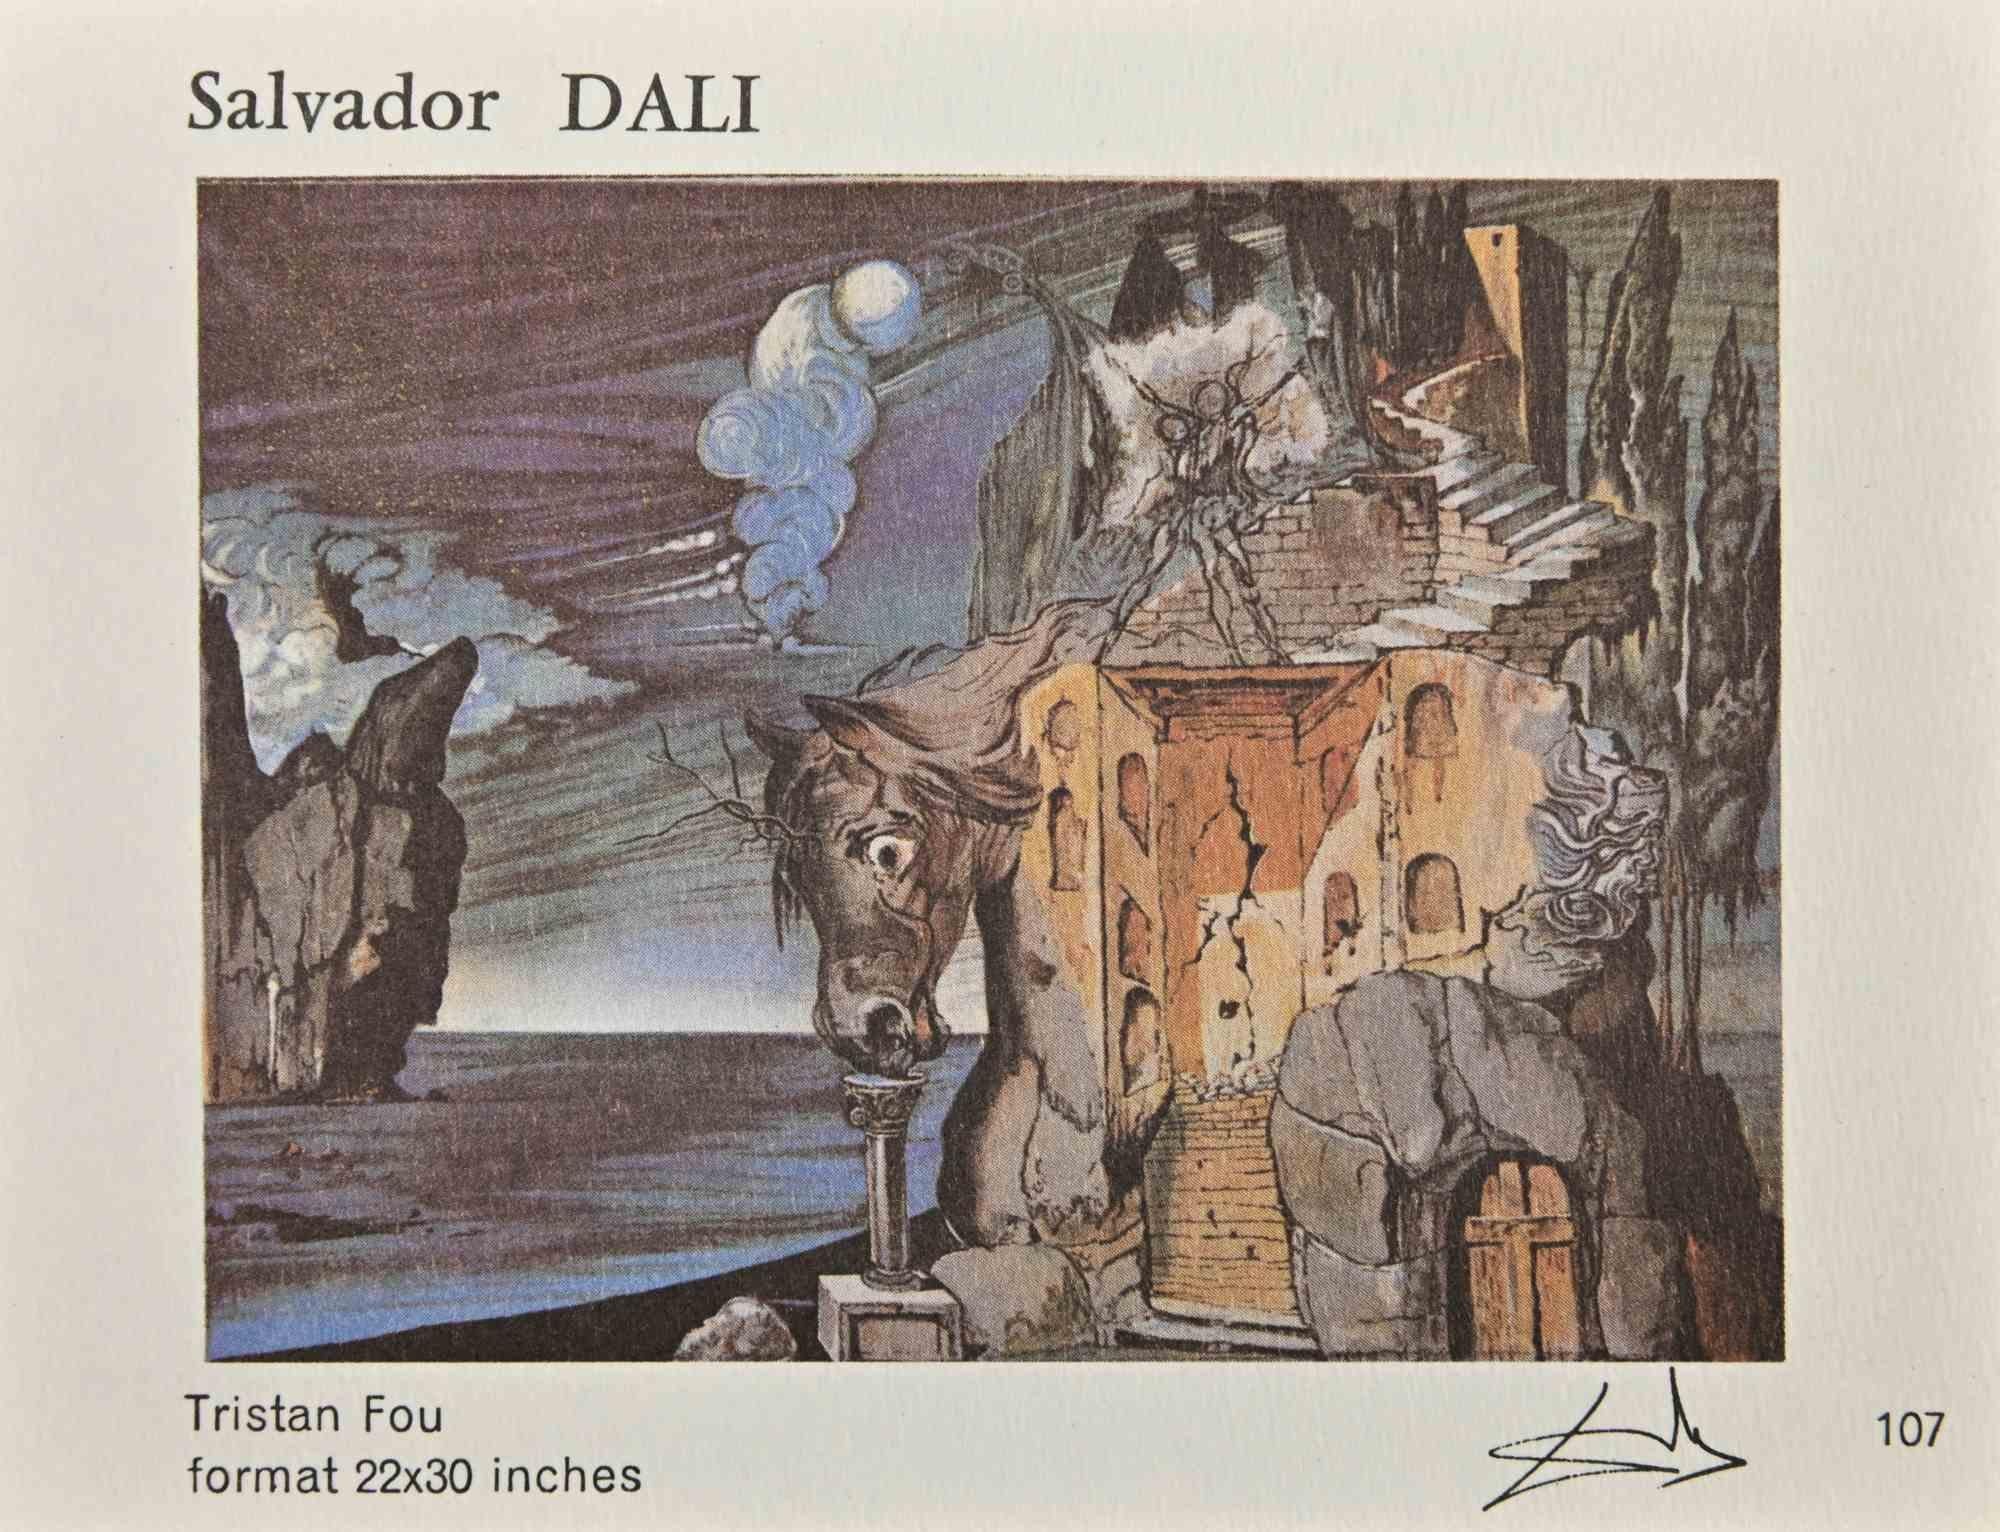 Sammlung von Vintage-Karten nach Salvador Dalì - 1980er Jahre (Surrealismus), Print, von Salvador Dalí